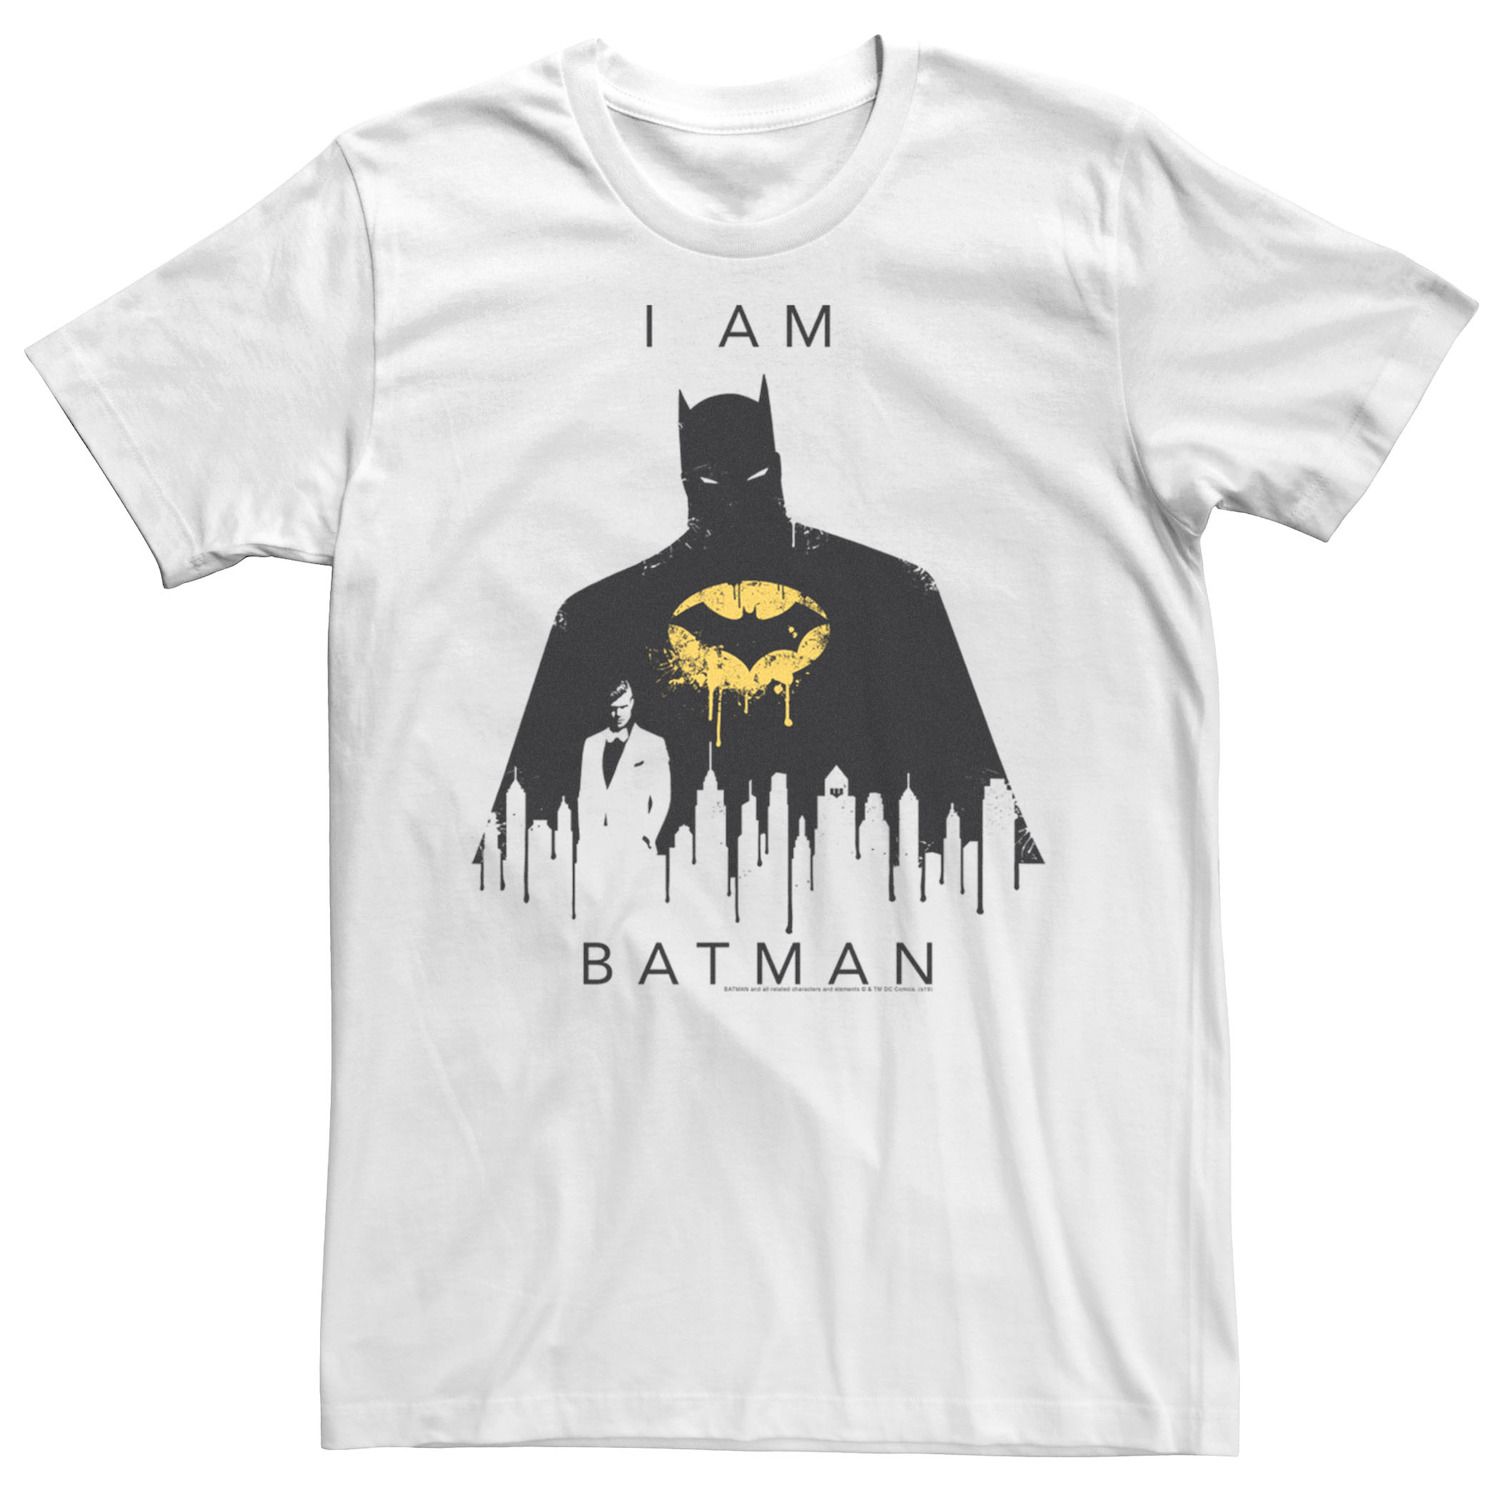 Мужская футболка Batman I Am Batman Licensed Character кинг т batman vol 3 i am bane